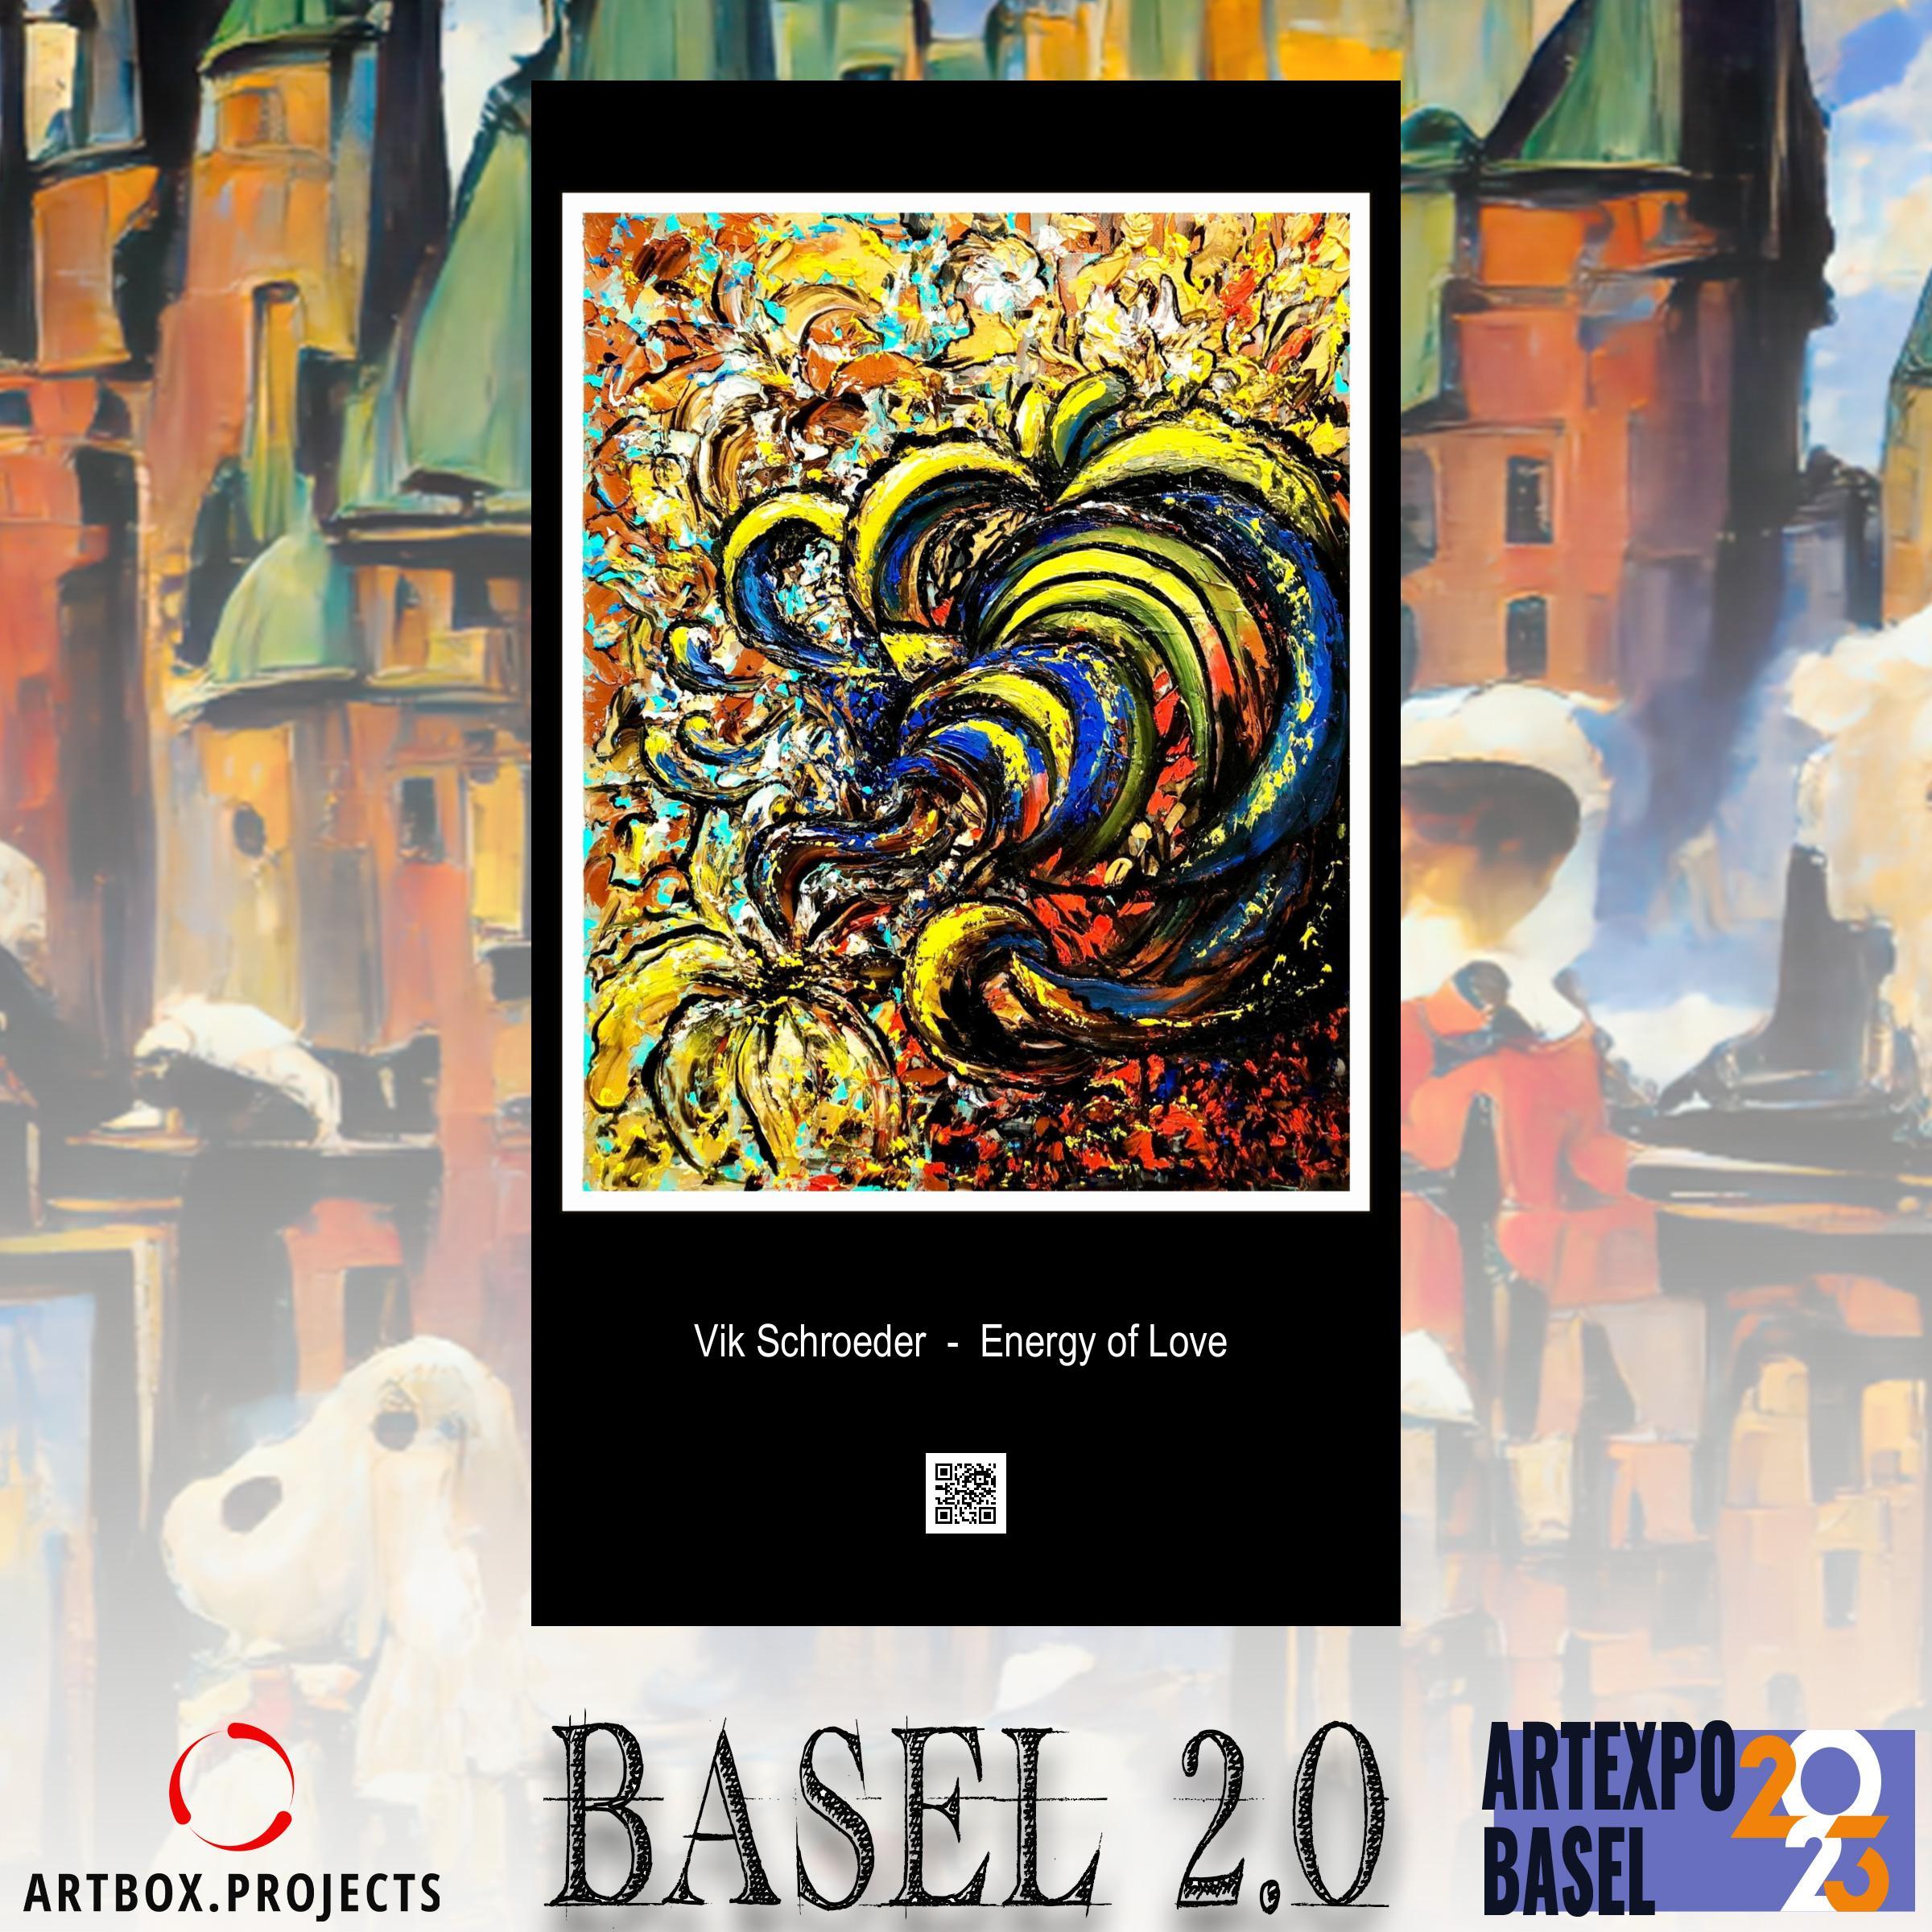 énergétique de l'amour expressionnisme abstrait, peinture à l'huile colorée originale de 50 x 40 cm - Impressionnisme abstrait Painting par Vik Schroeder 